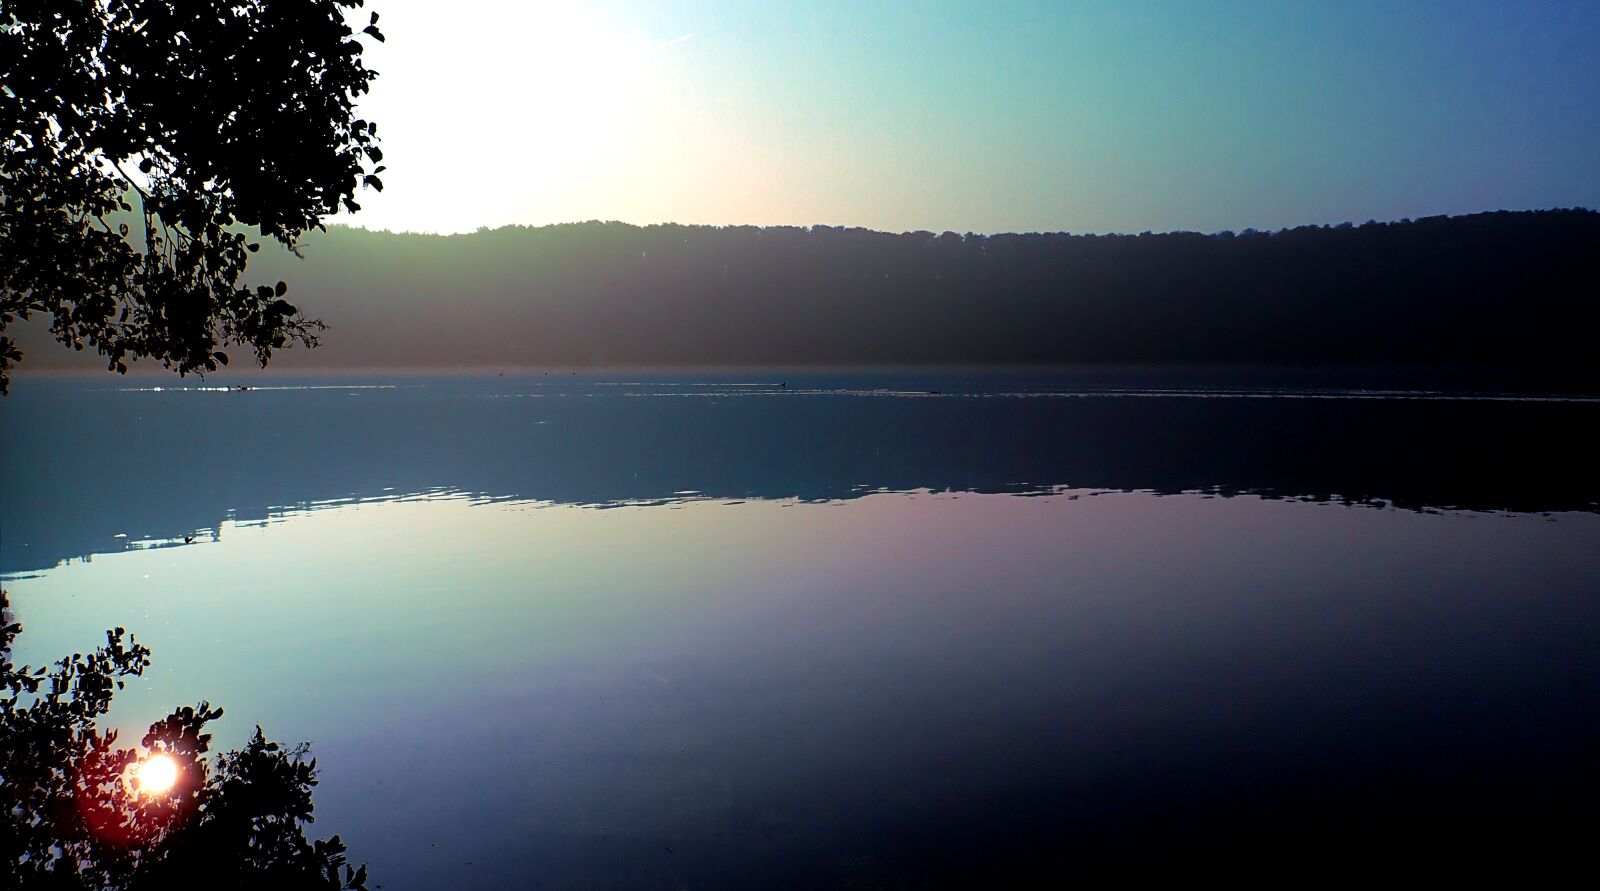 Olympus TG-5 sample photo. Sunset, lake, landscape photography